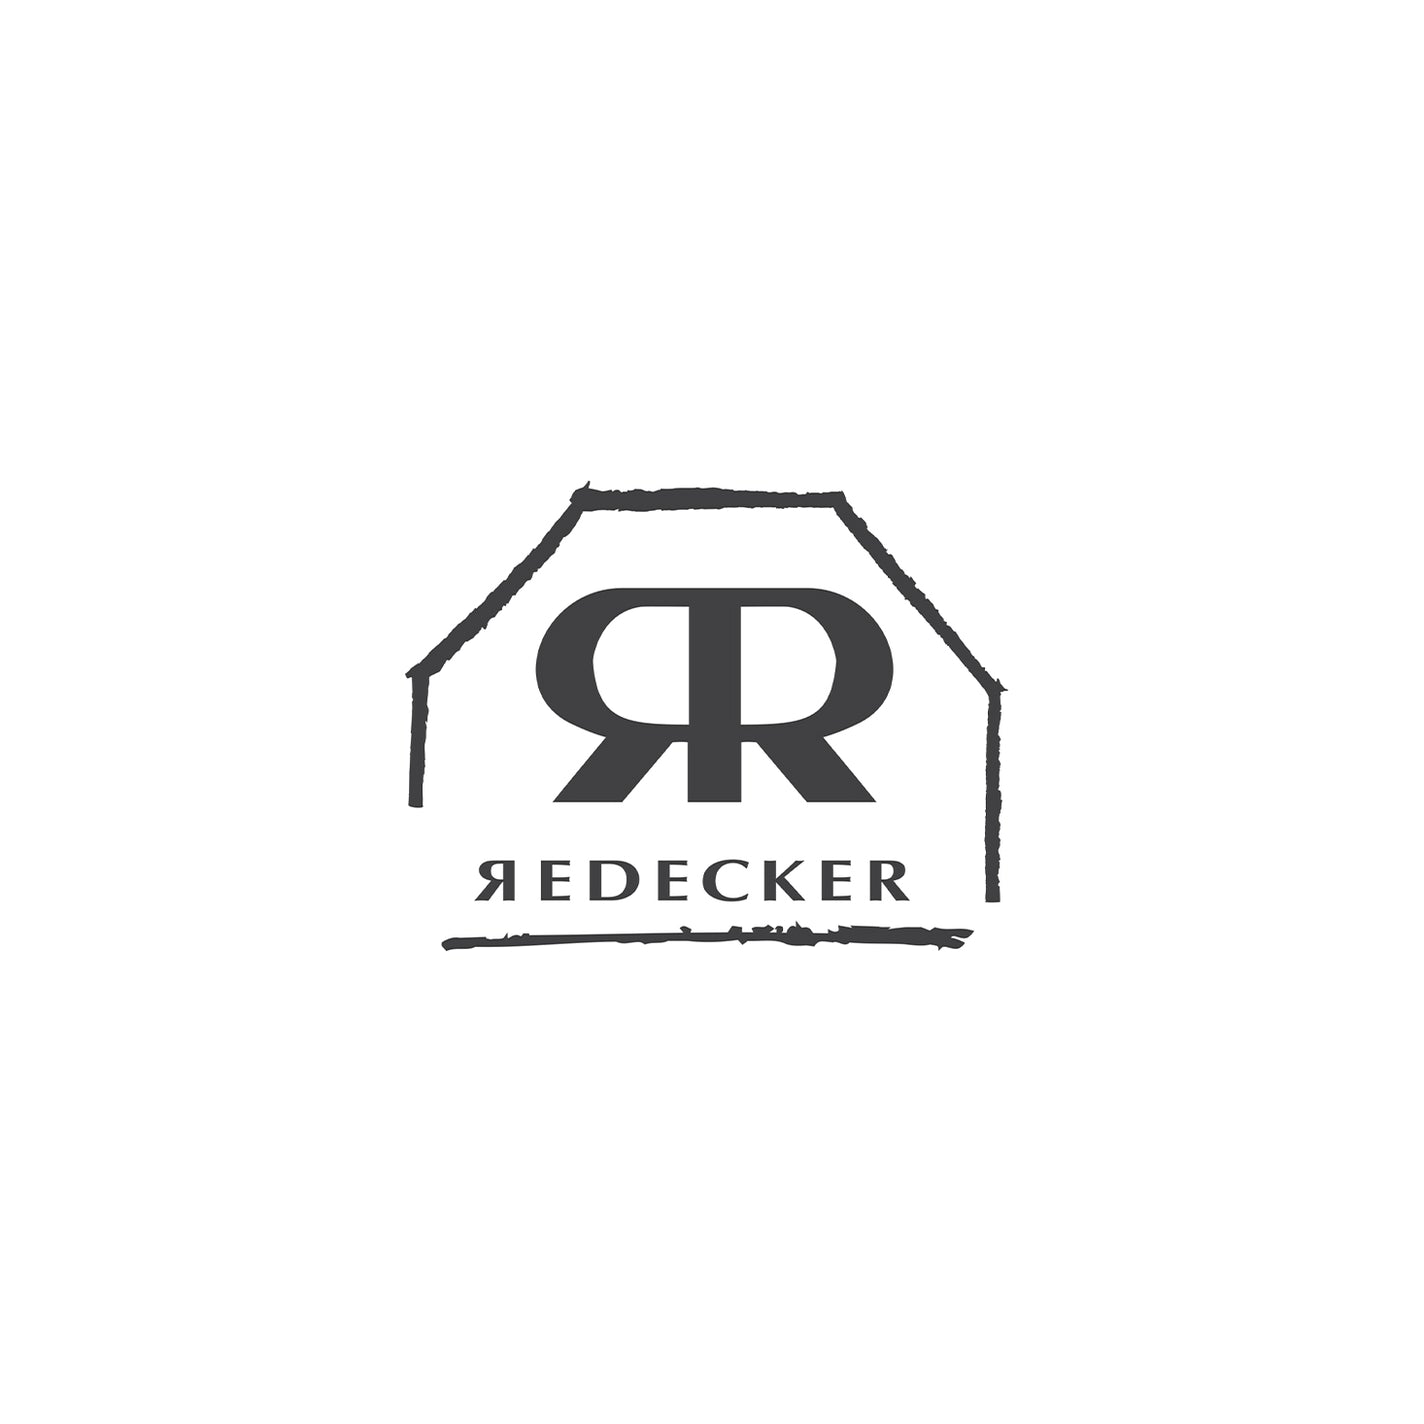 Redecker Red Cedar Oil